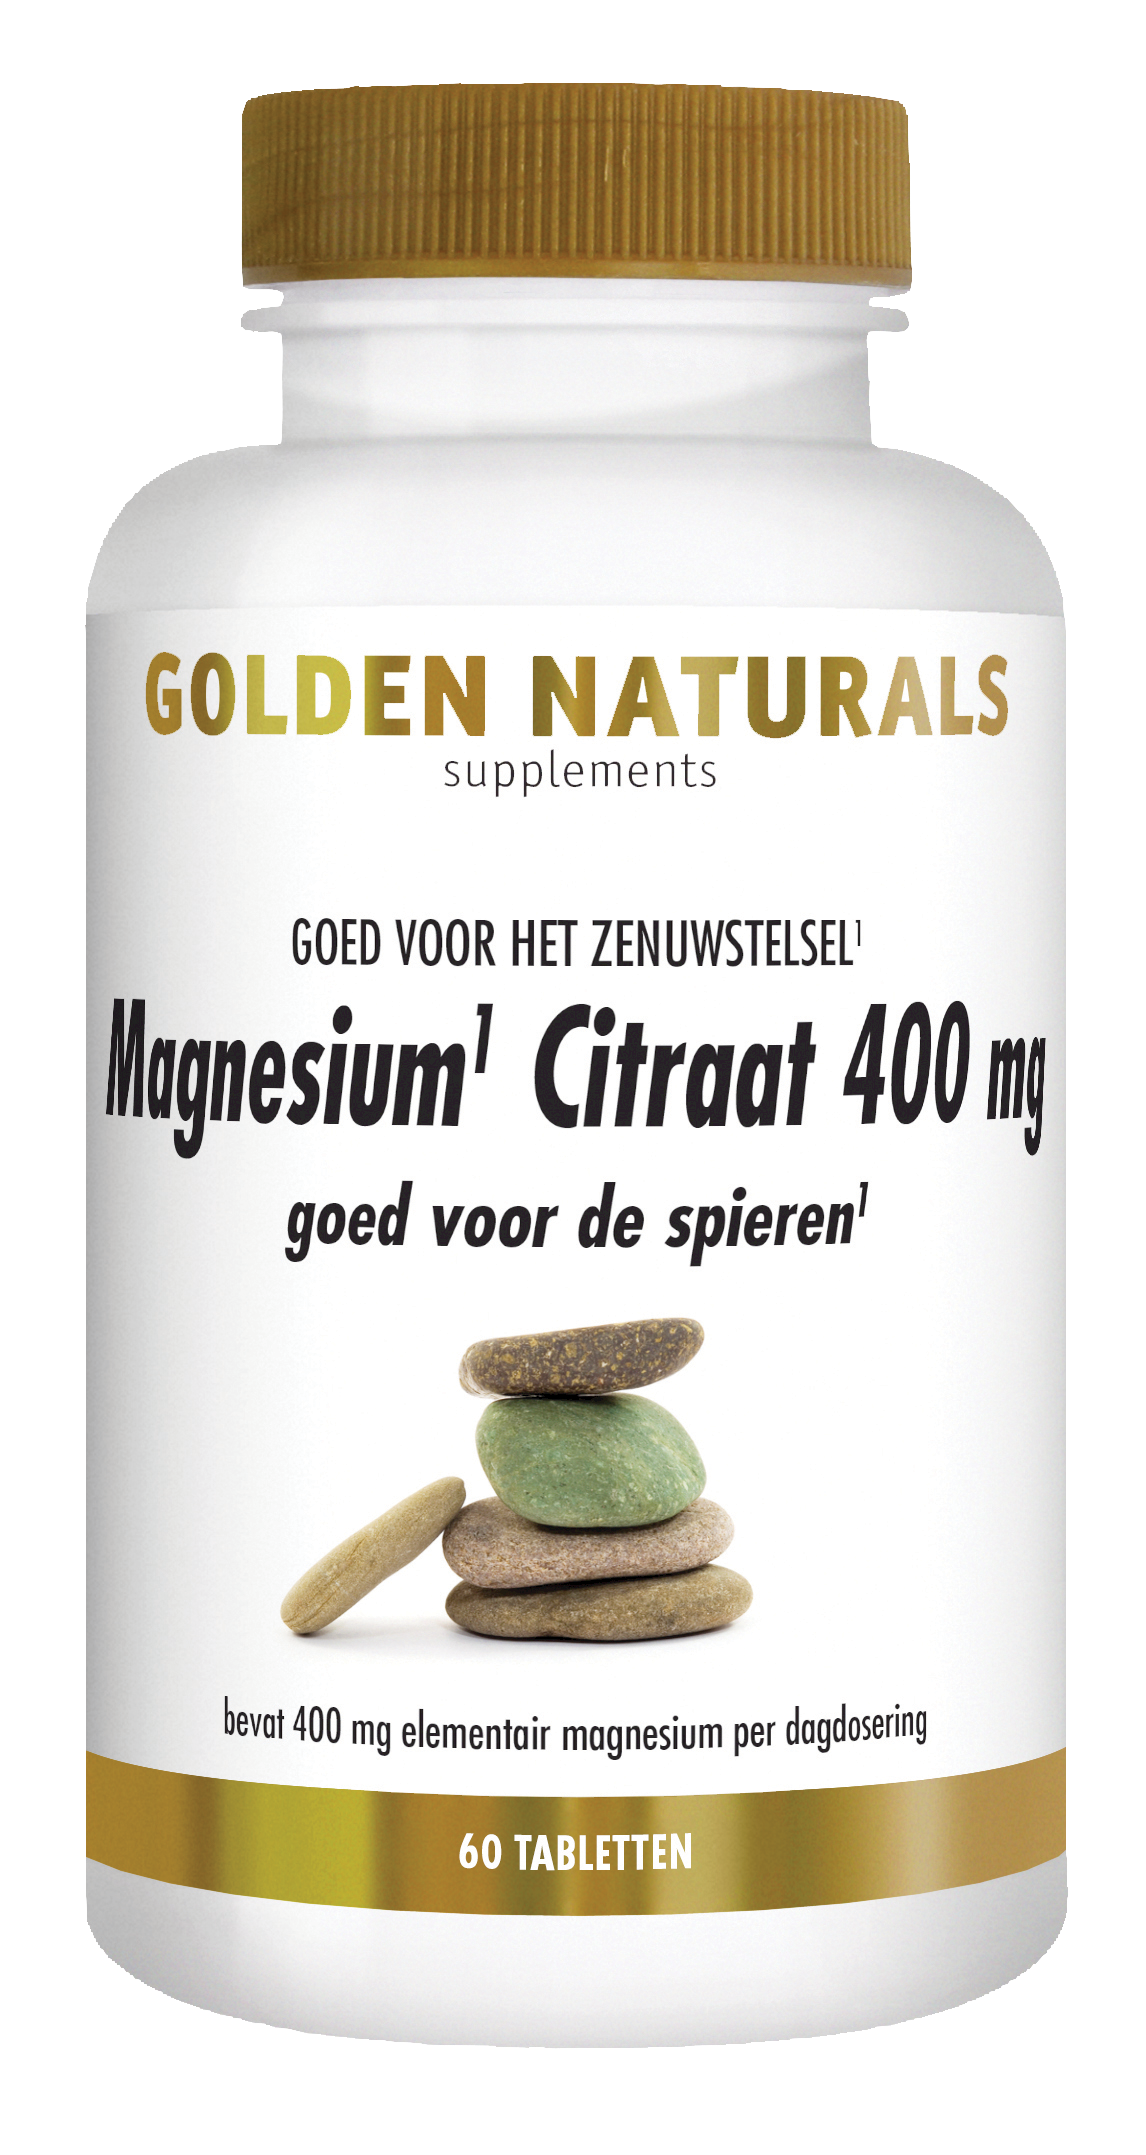 Onmiddellijk Vergelden Verlaten Buy Golden Naturals Magnesium Citrate 400 mg? - GoldenNaturals.com